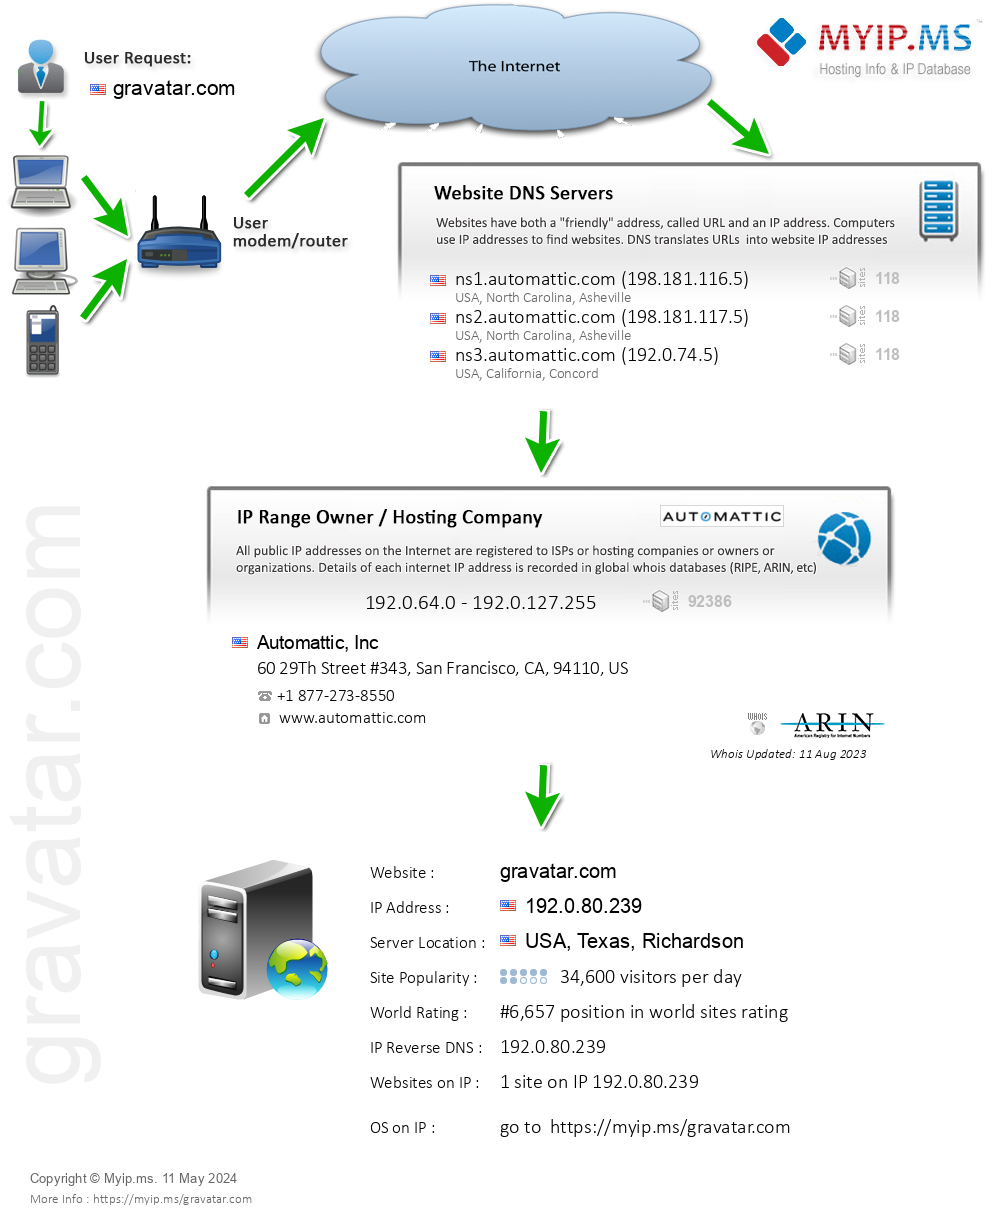 Gravatar.com - Website Hosting Visual IP Diagram